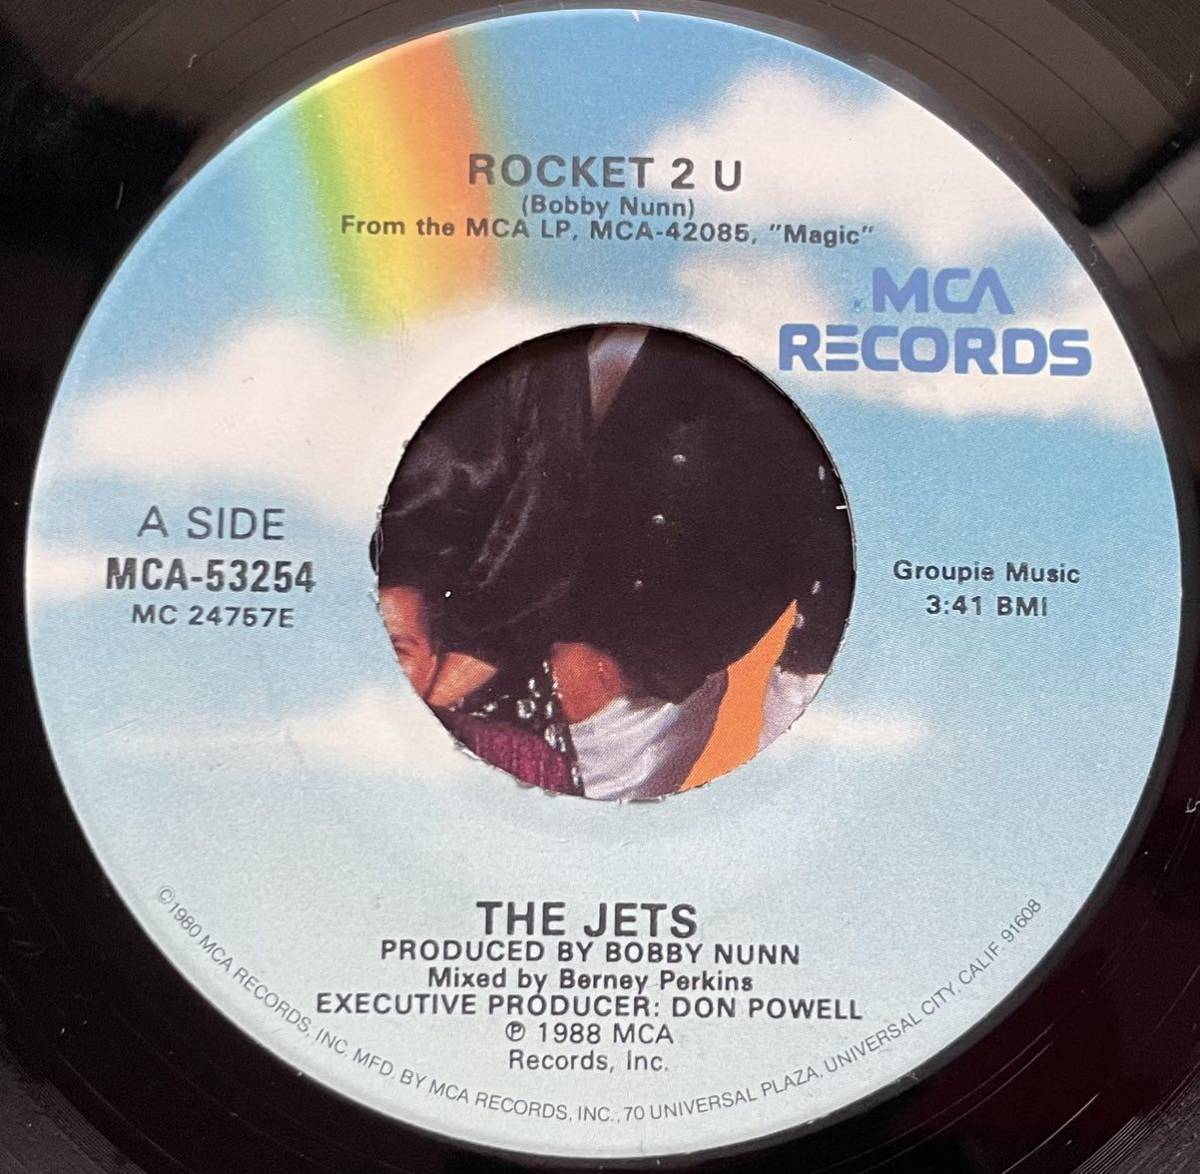 EP盤 The Jets / Rocket 2 U 7インチ盤その他プロモーション盤 レア盤 人気レコード 多数出品。_画像2